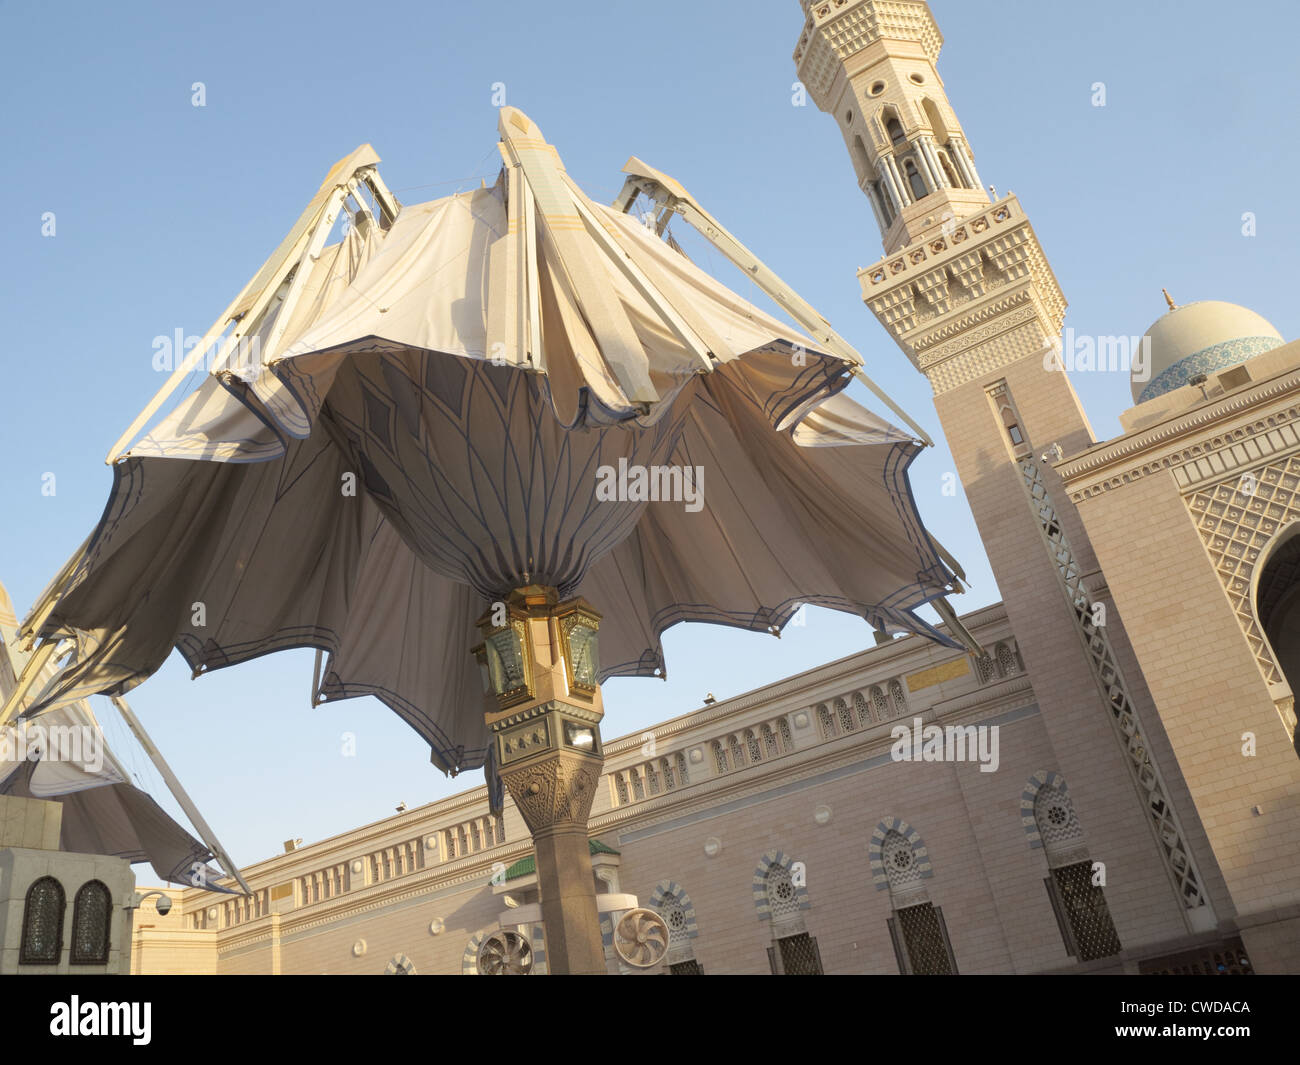 La taille géante parapluie automatique à la fermeture d'une mosquée Nabawi, Al Madinah, Arabie Saoudite Banque D'Images